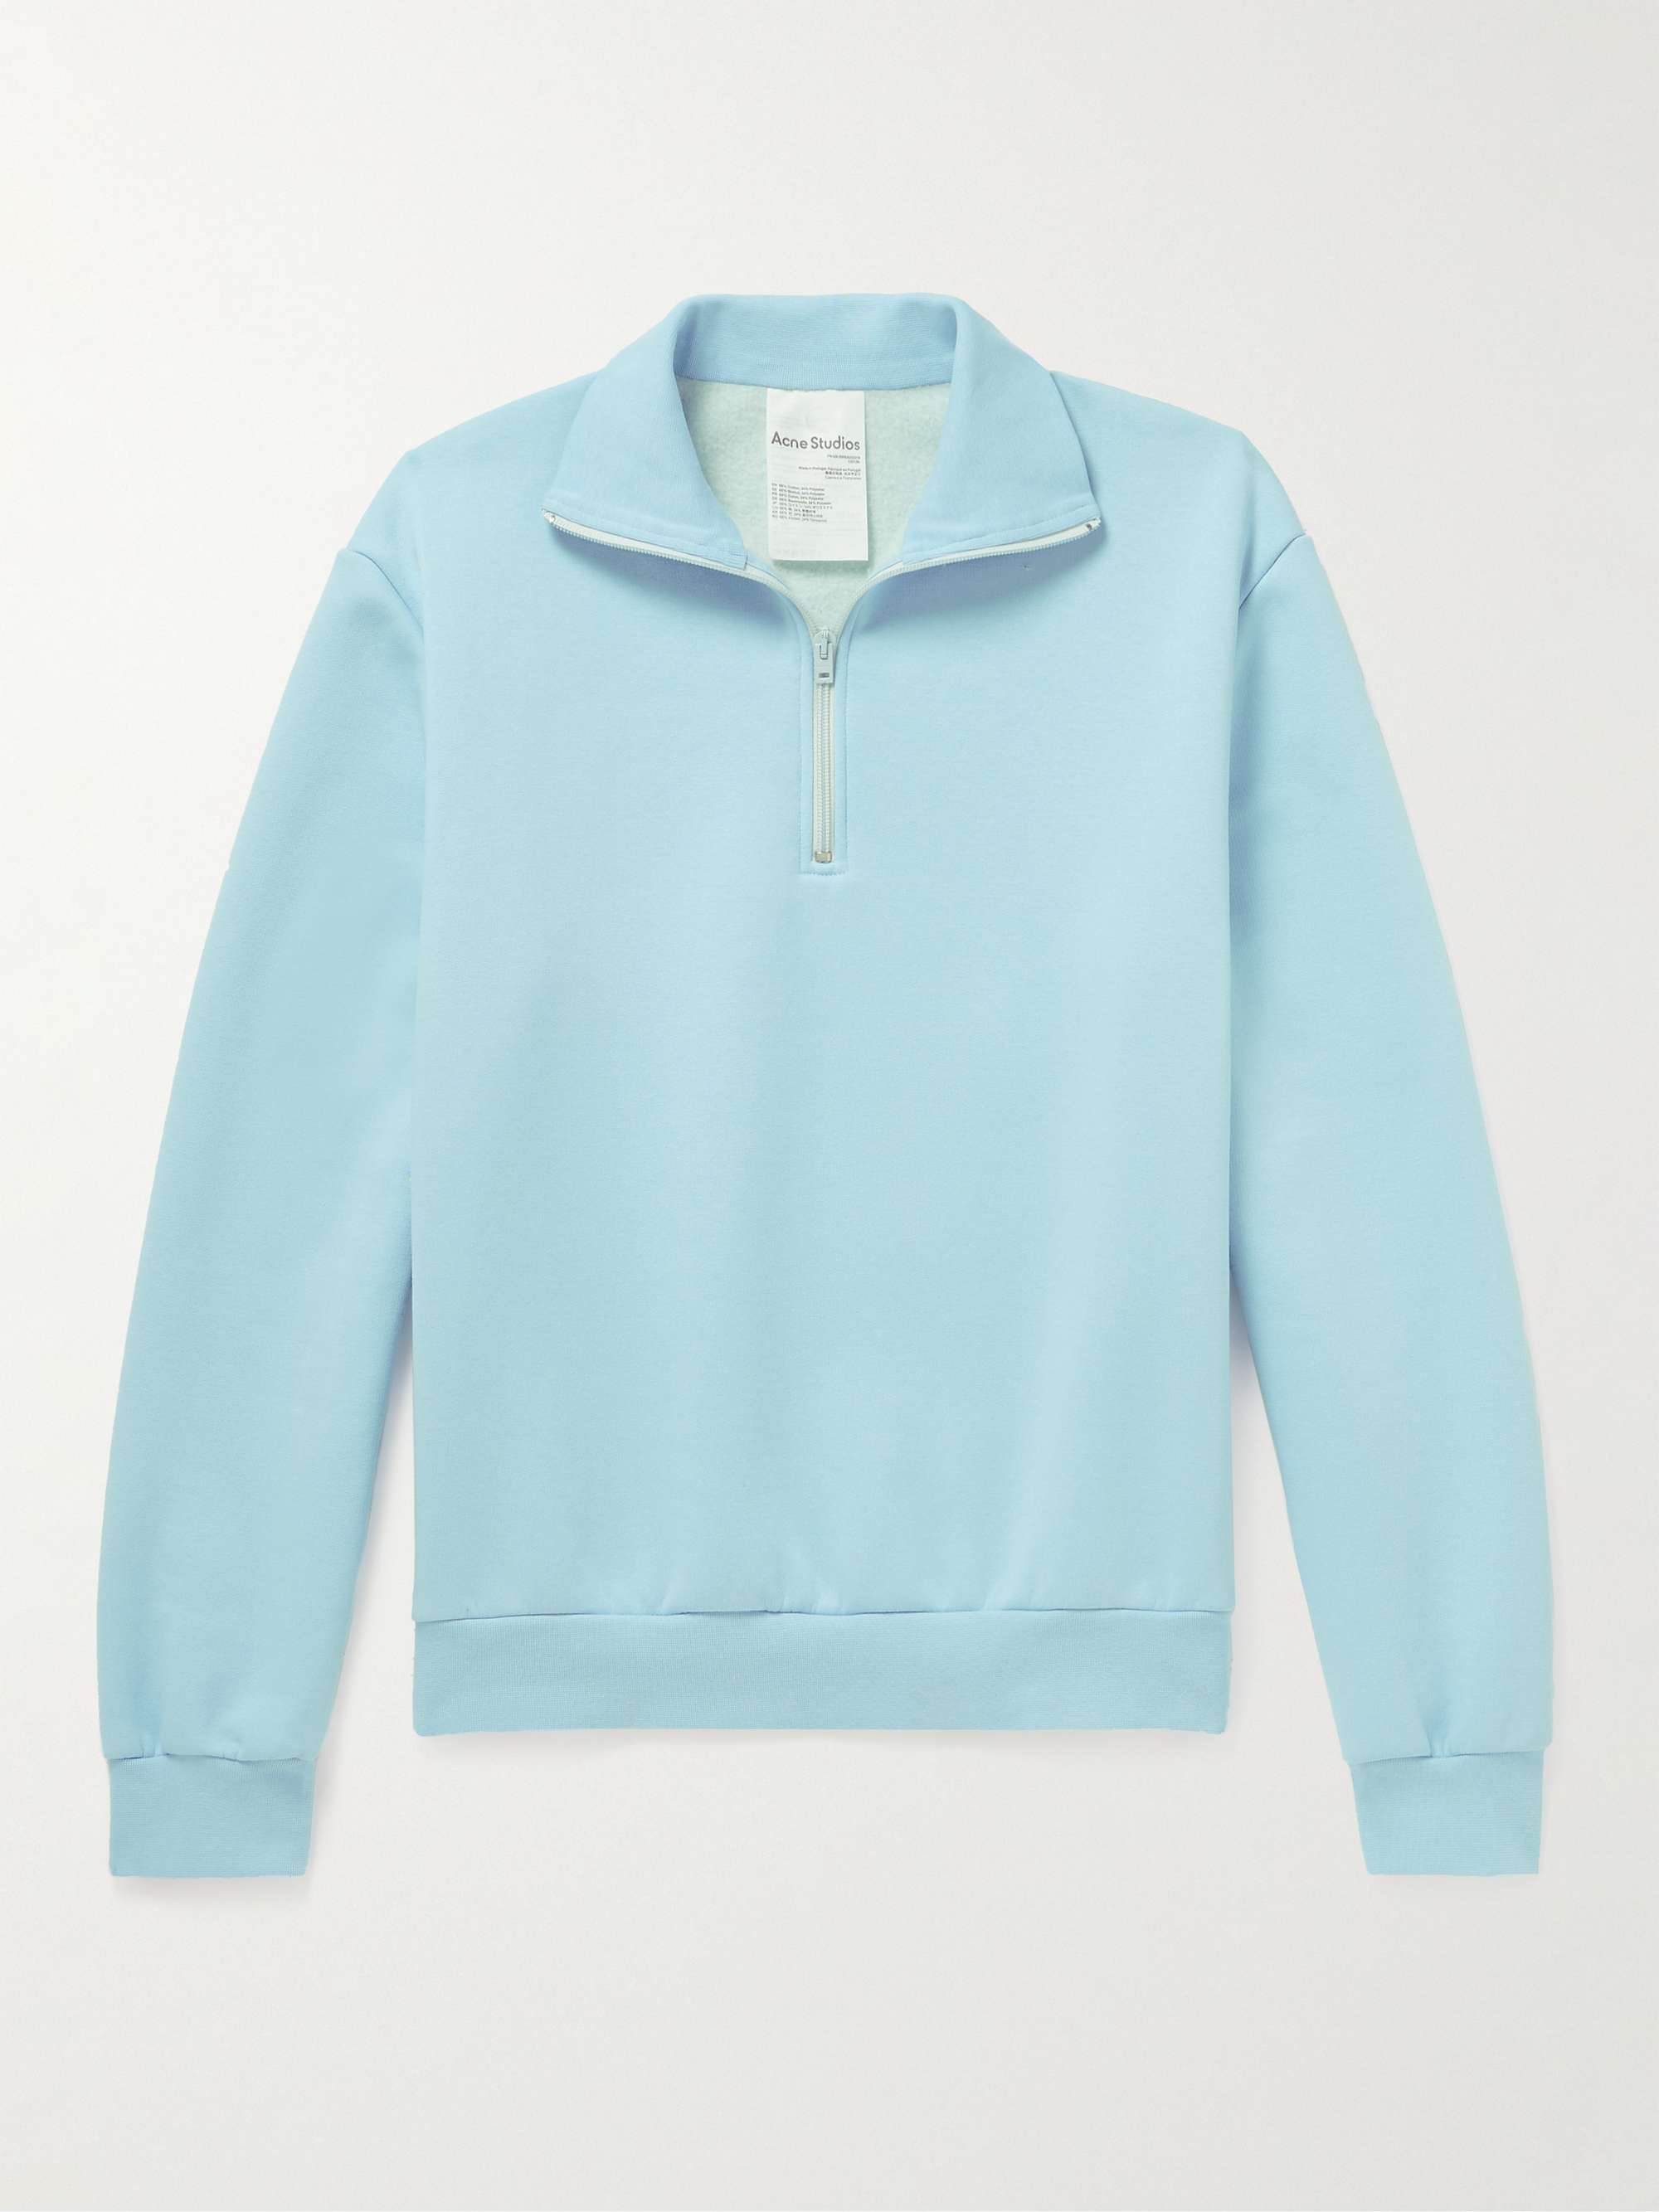 ACNE STUDIOS Fenrik Cotton-Blend Jersey Half-Zip Sweatshirt